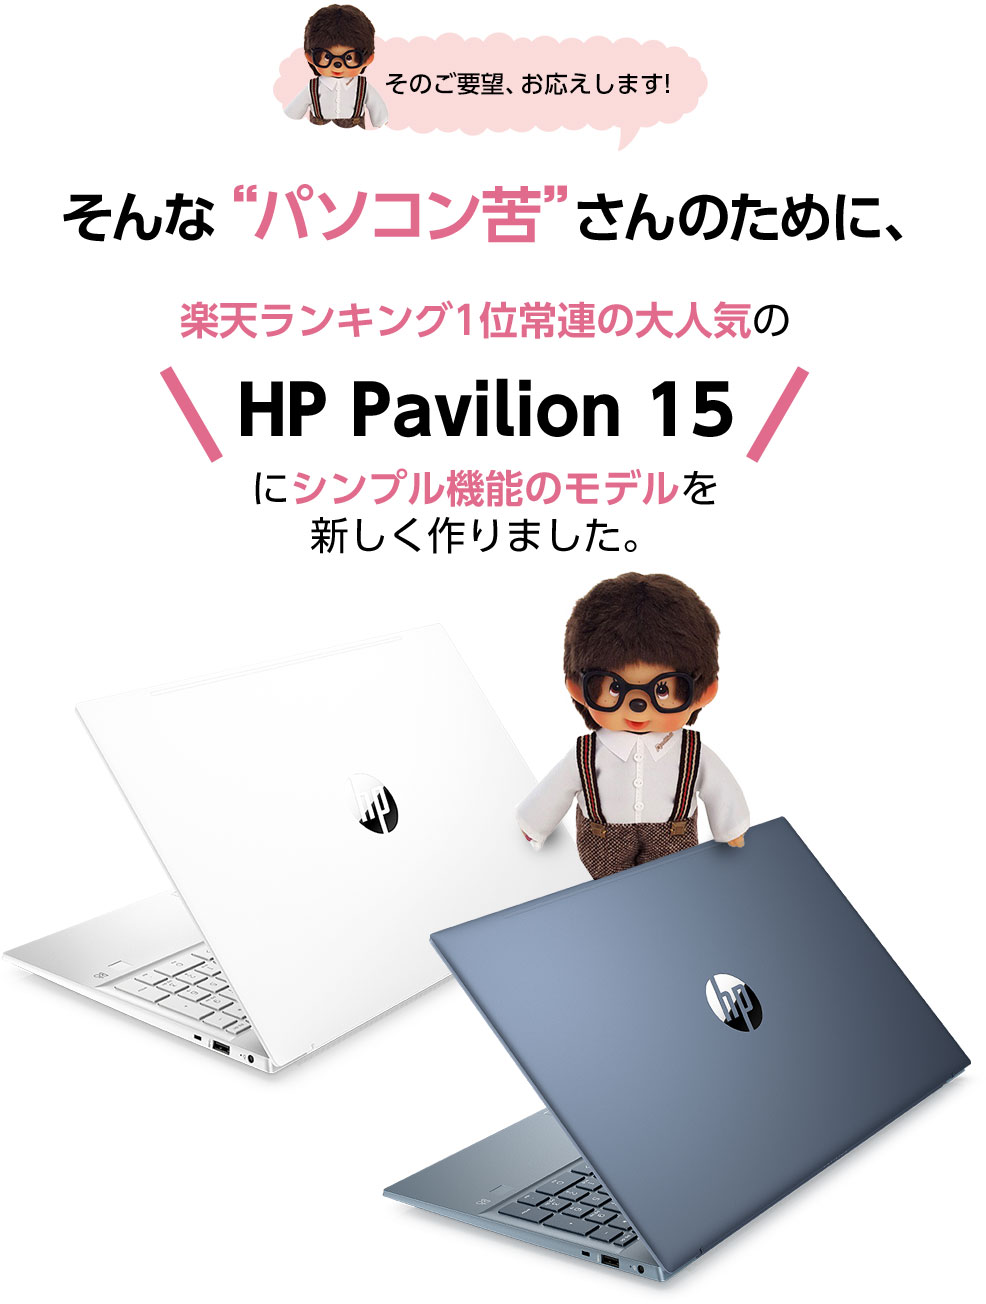 そんな“パソコン苦”さんのために、楽天ランキング1位常連の大人気の「HP Pavilion 15」にシンプル機能のモデルを新しく作りました。